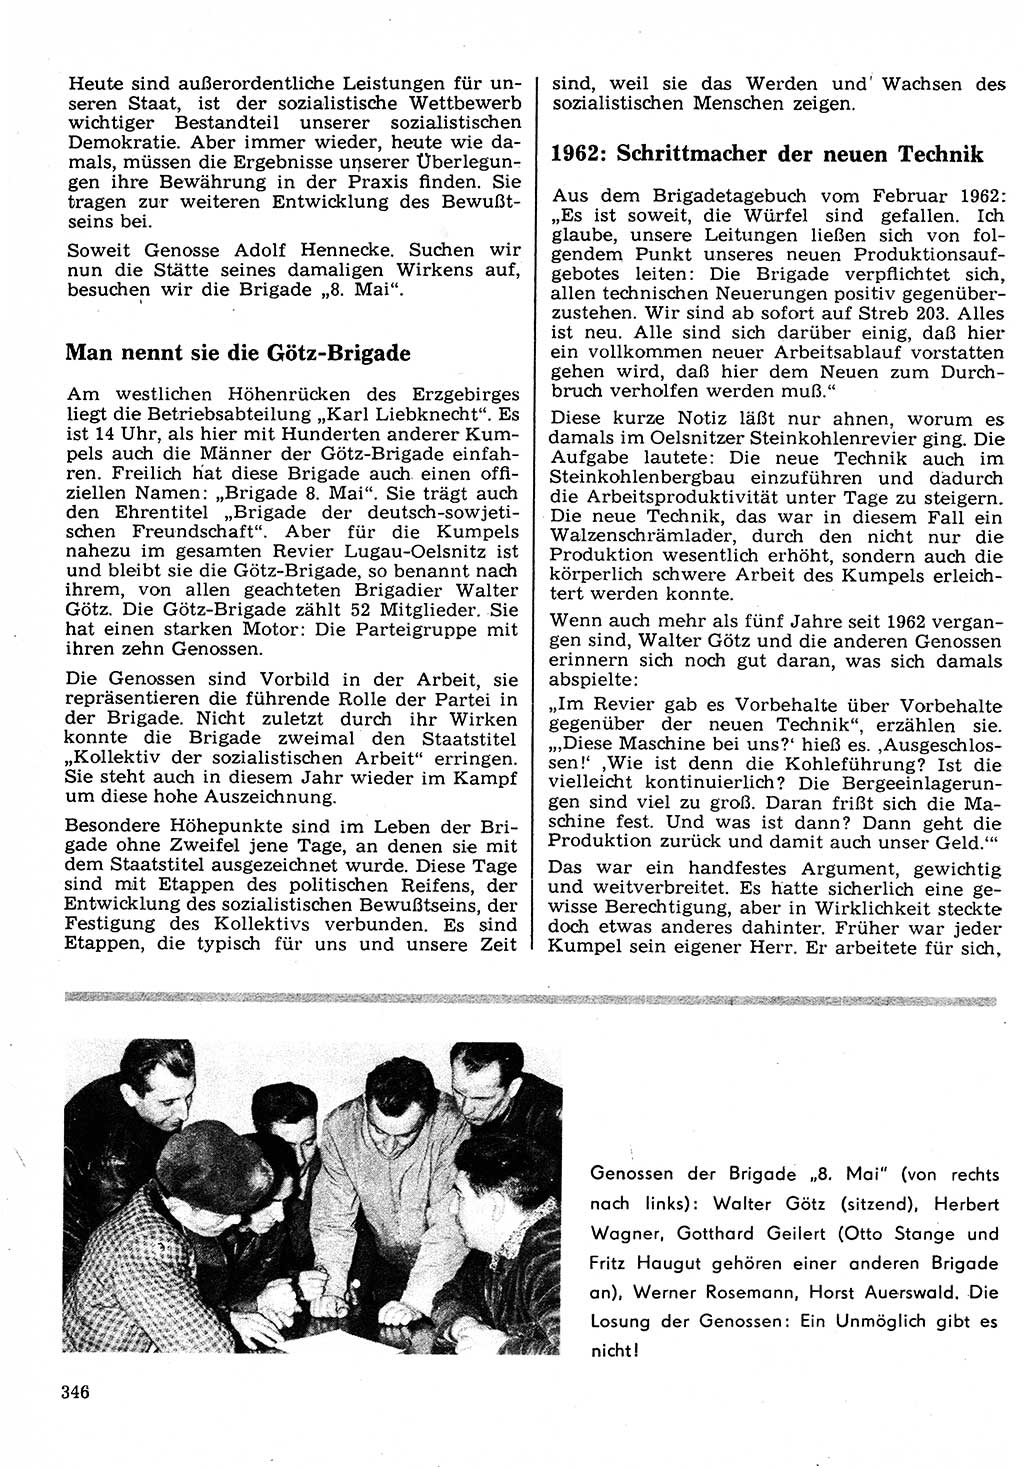 Neuer Weg (NW), Organ des Zentralkomitees (ZK) der SED (Sozialistische Einheitspartei Deutschlands) für Fragen des Parteilebens, 22. Jahrgang [Deutsche Demokratische Republik (DDR)] 1967, Seite 346 (NW ZK SED DDR 1967, S. 346)